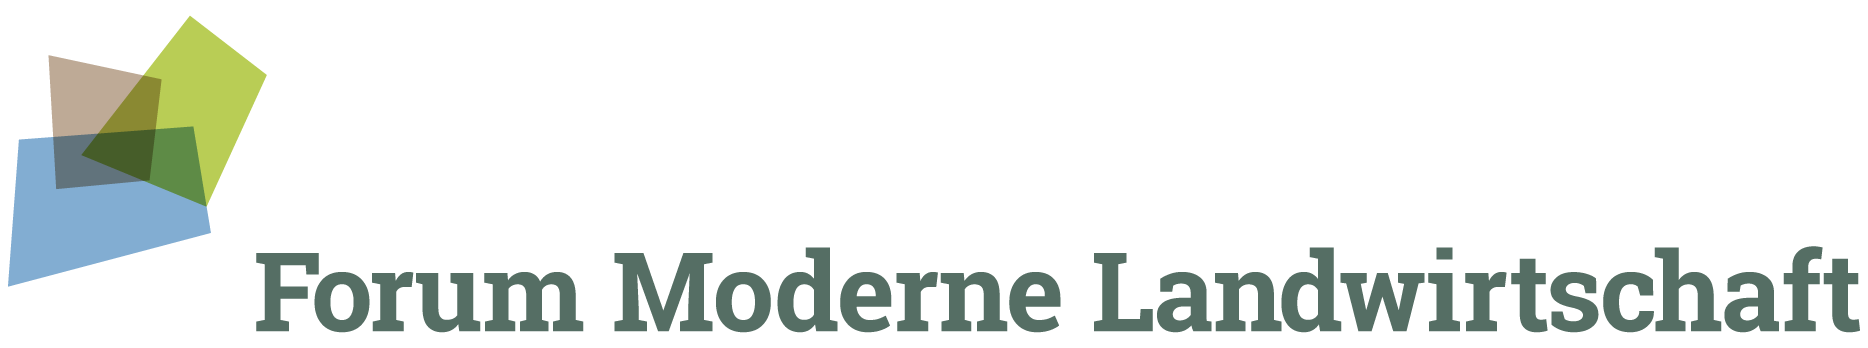 Forum moderne Landwirtschaft_Logo_RGB